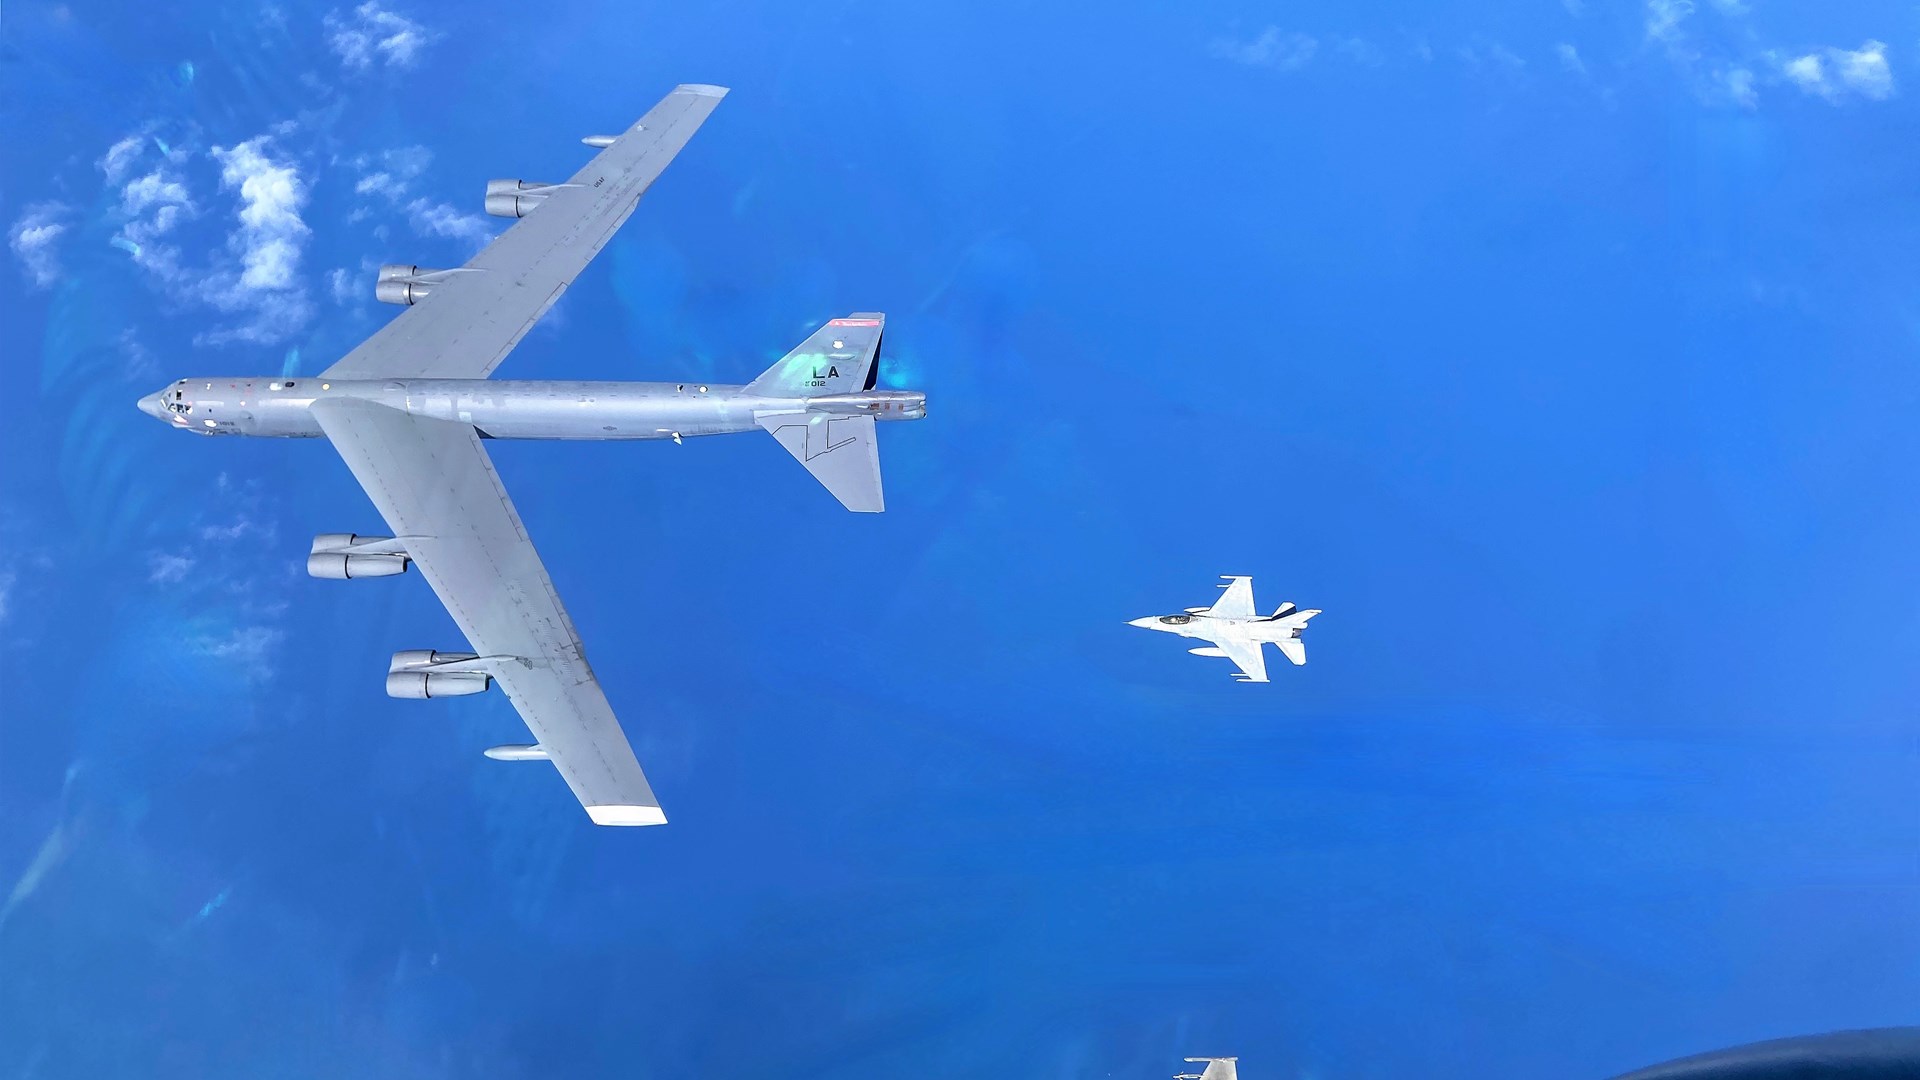 Το “Σπαθί της Σπάρτης” έσκισε τον ουρανό του Αιγαίου με αμερικανικά βομβαρδιστικά Β-52 – ΦΩΤΟ